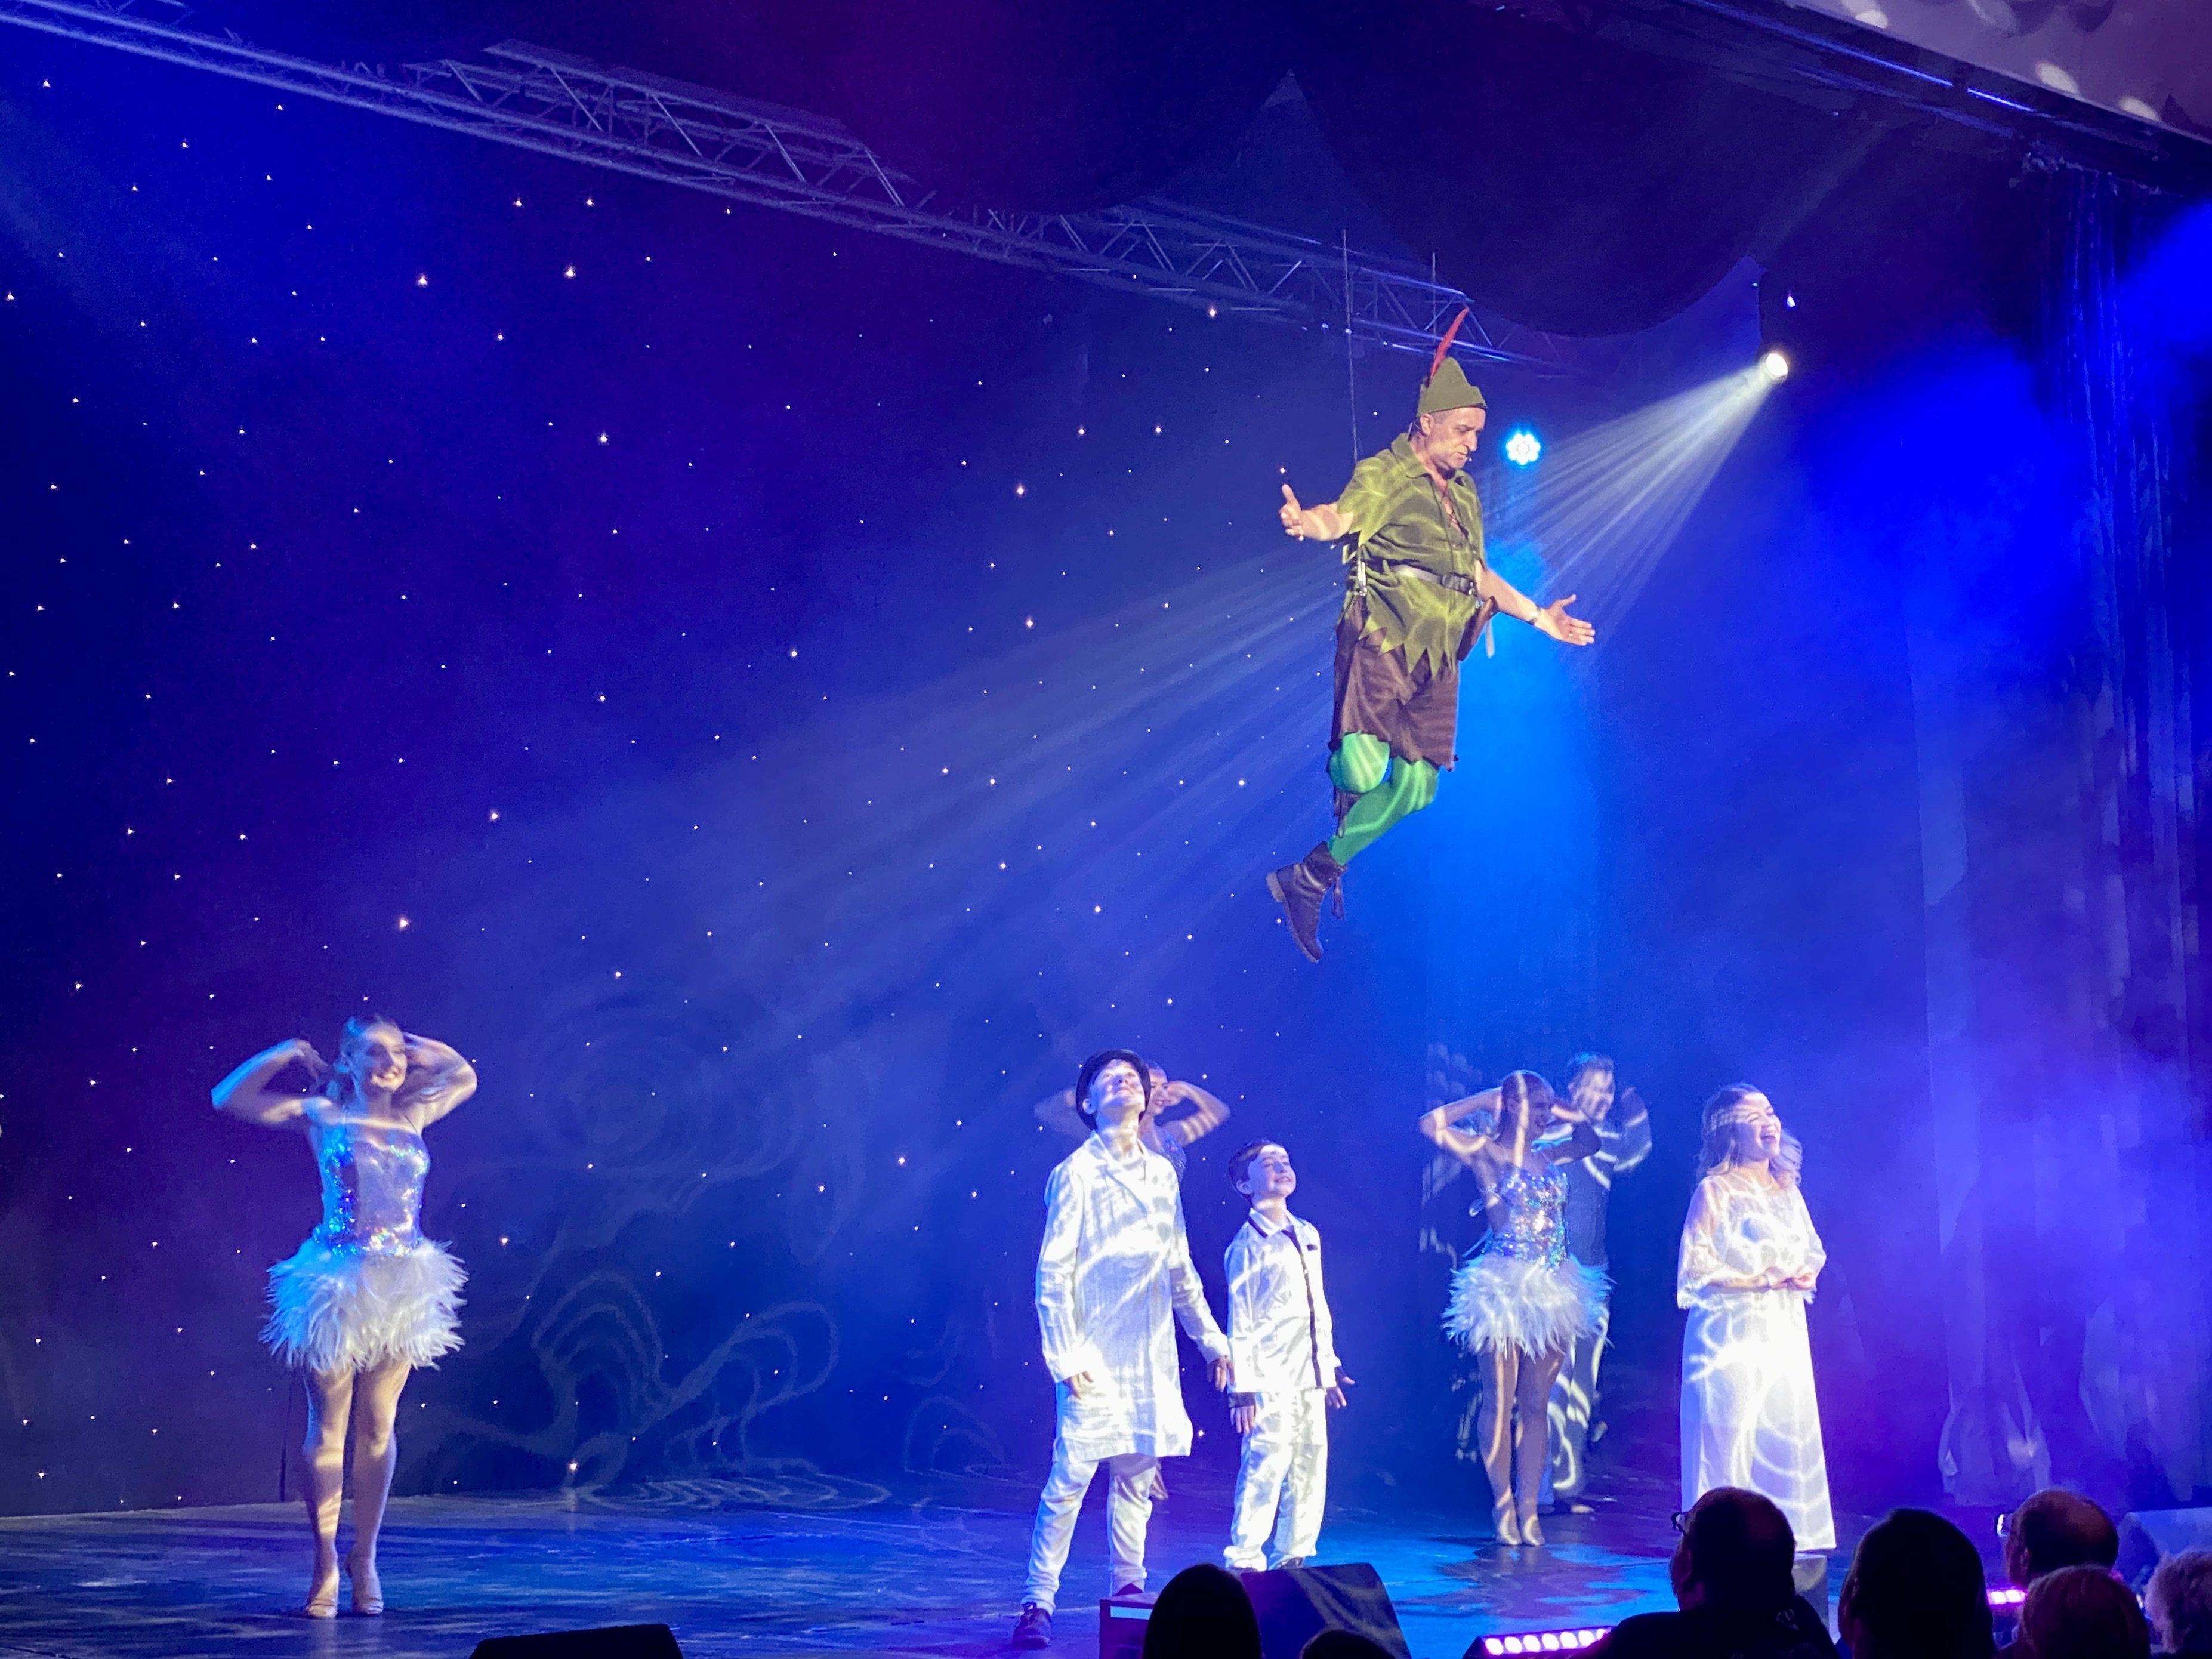 Peter Pan takes flight